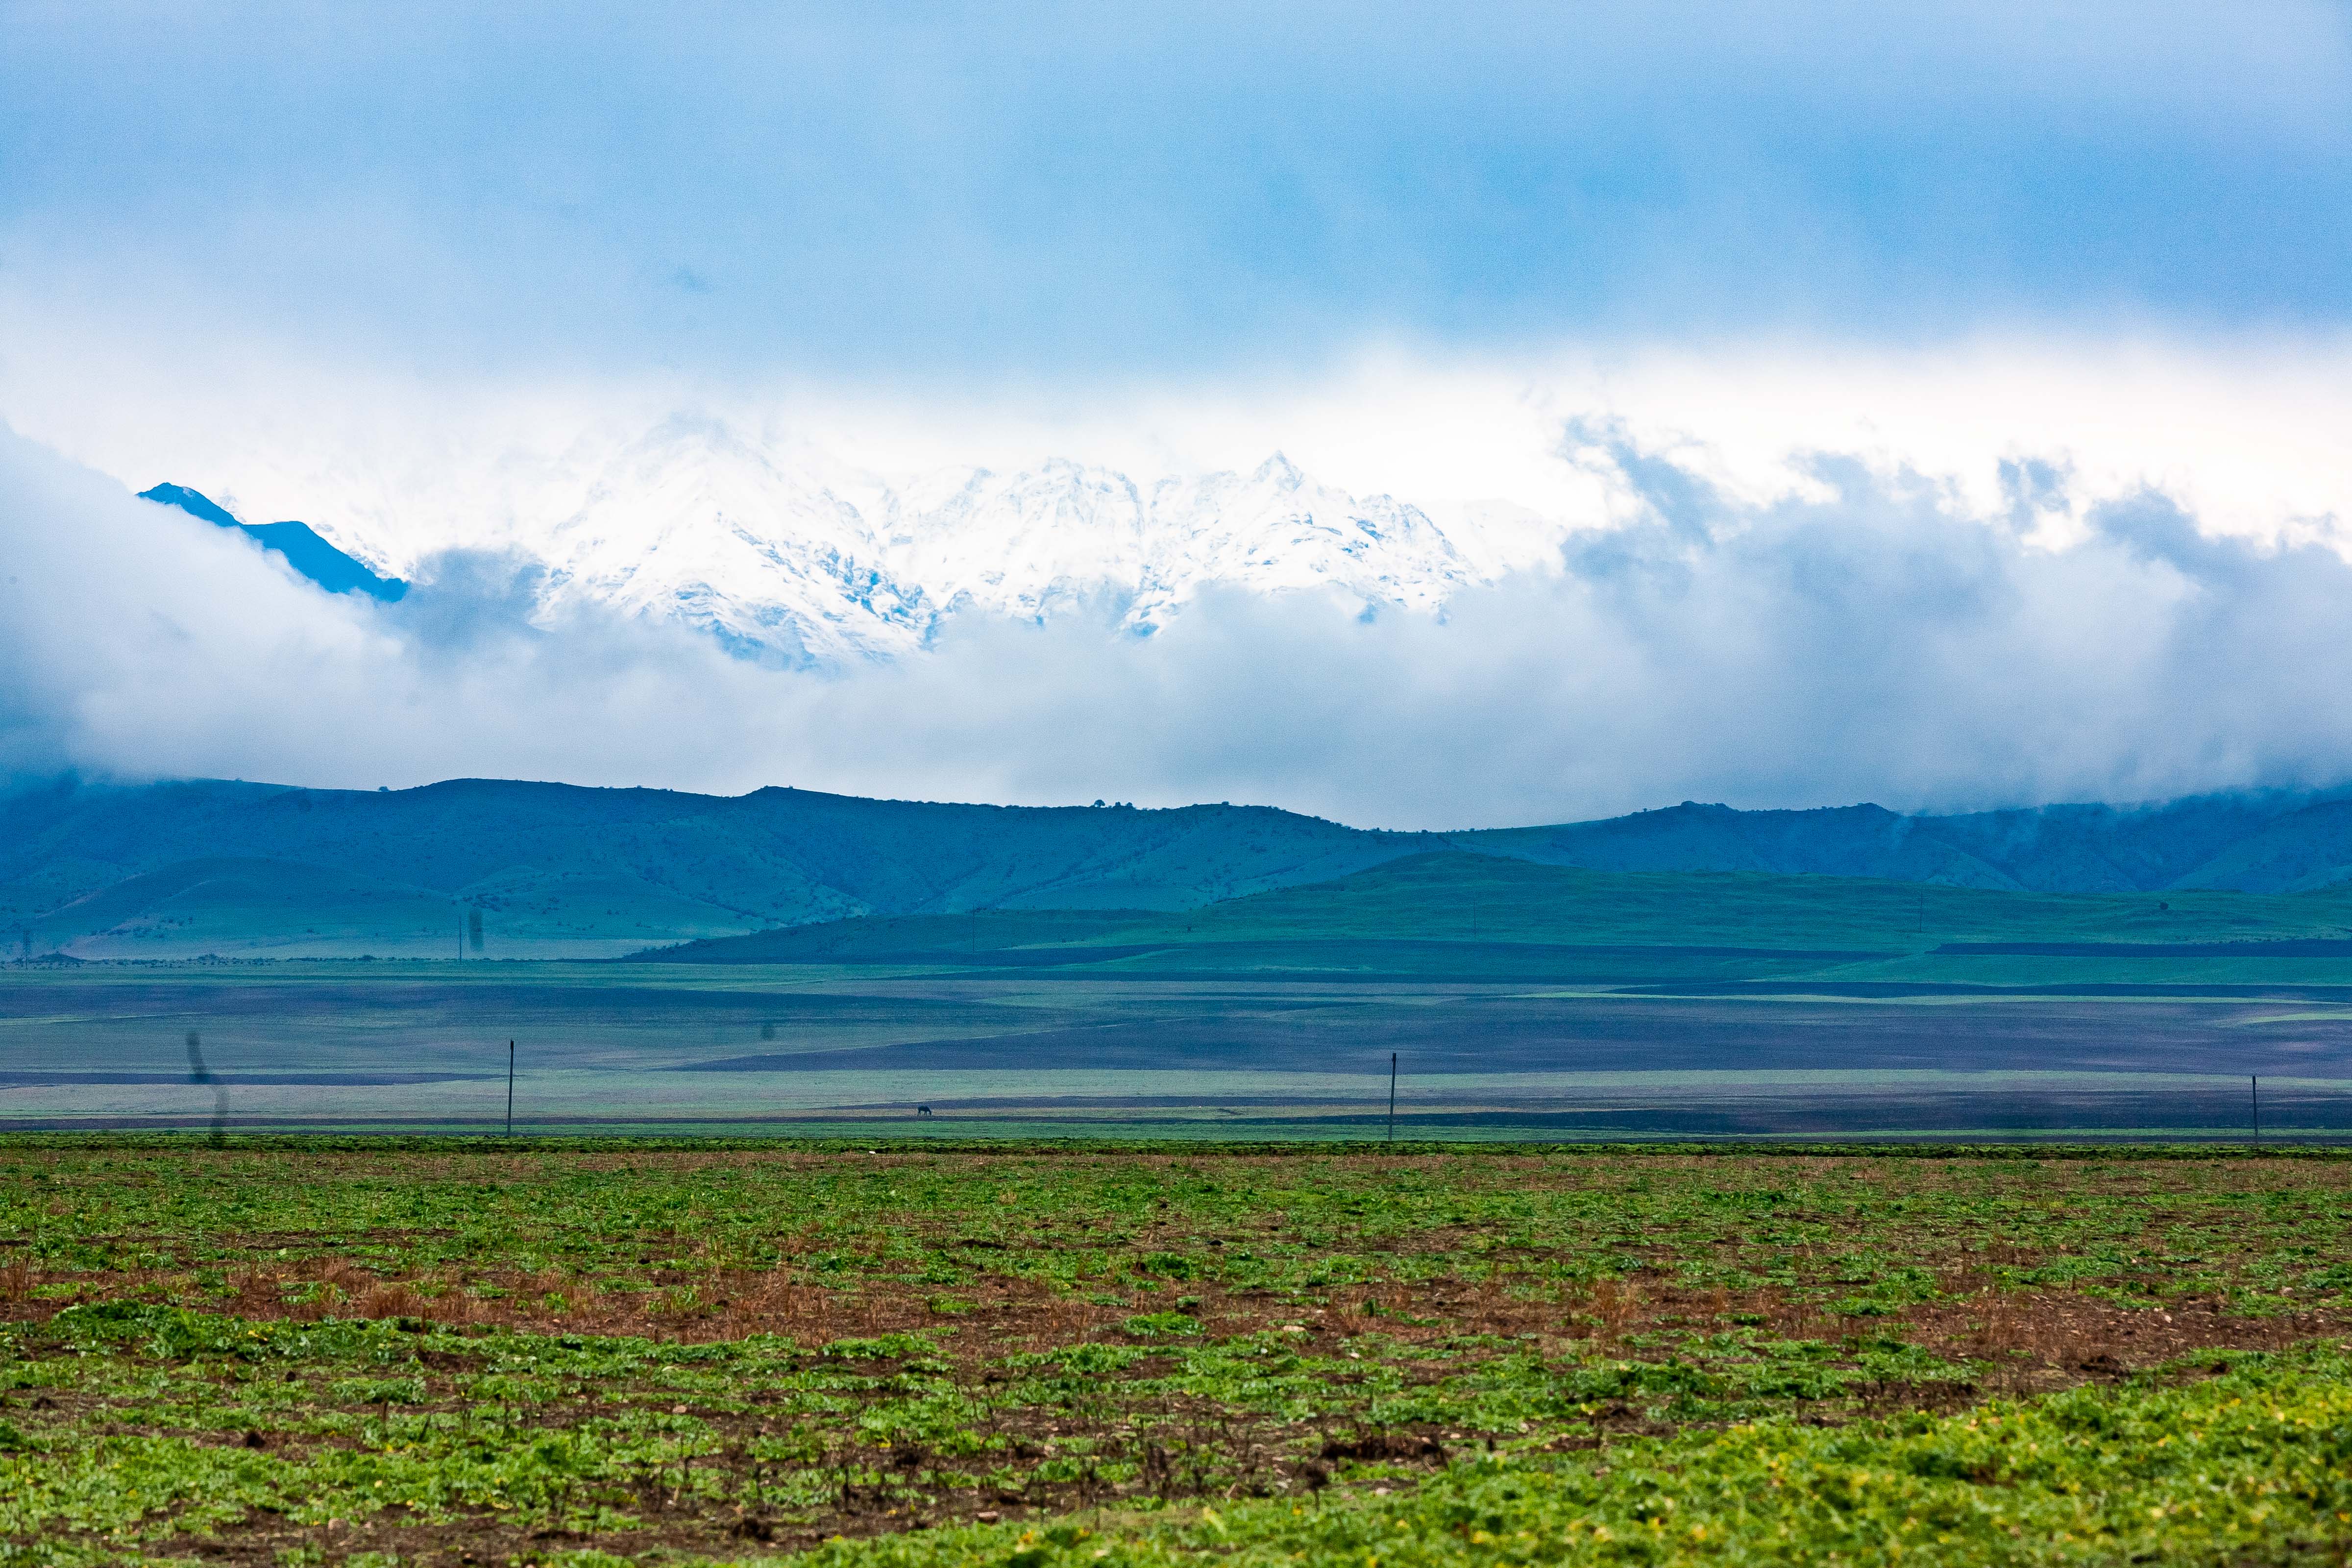 Azerbaijan, Shaki (SAK) Prov, Mountains, 2009, IMG 8503